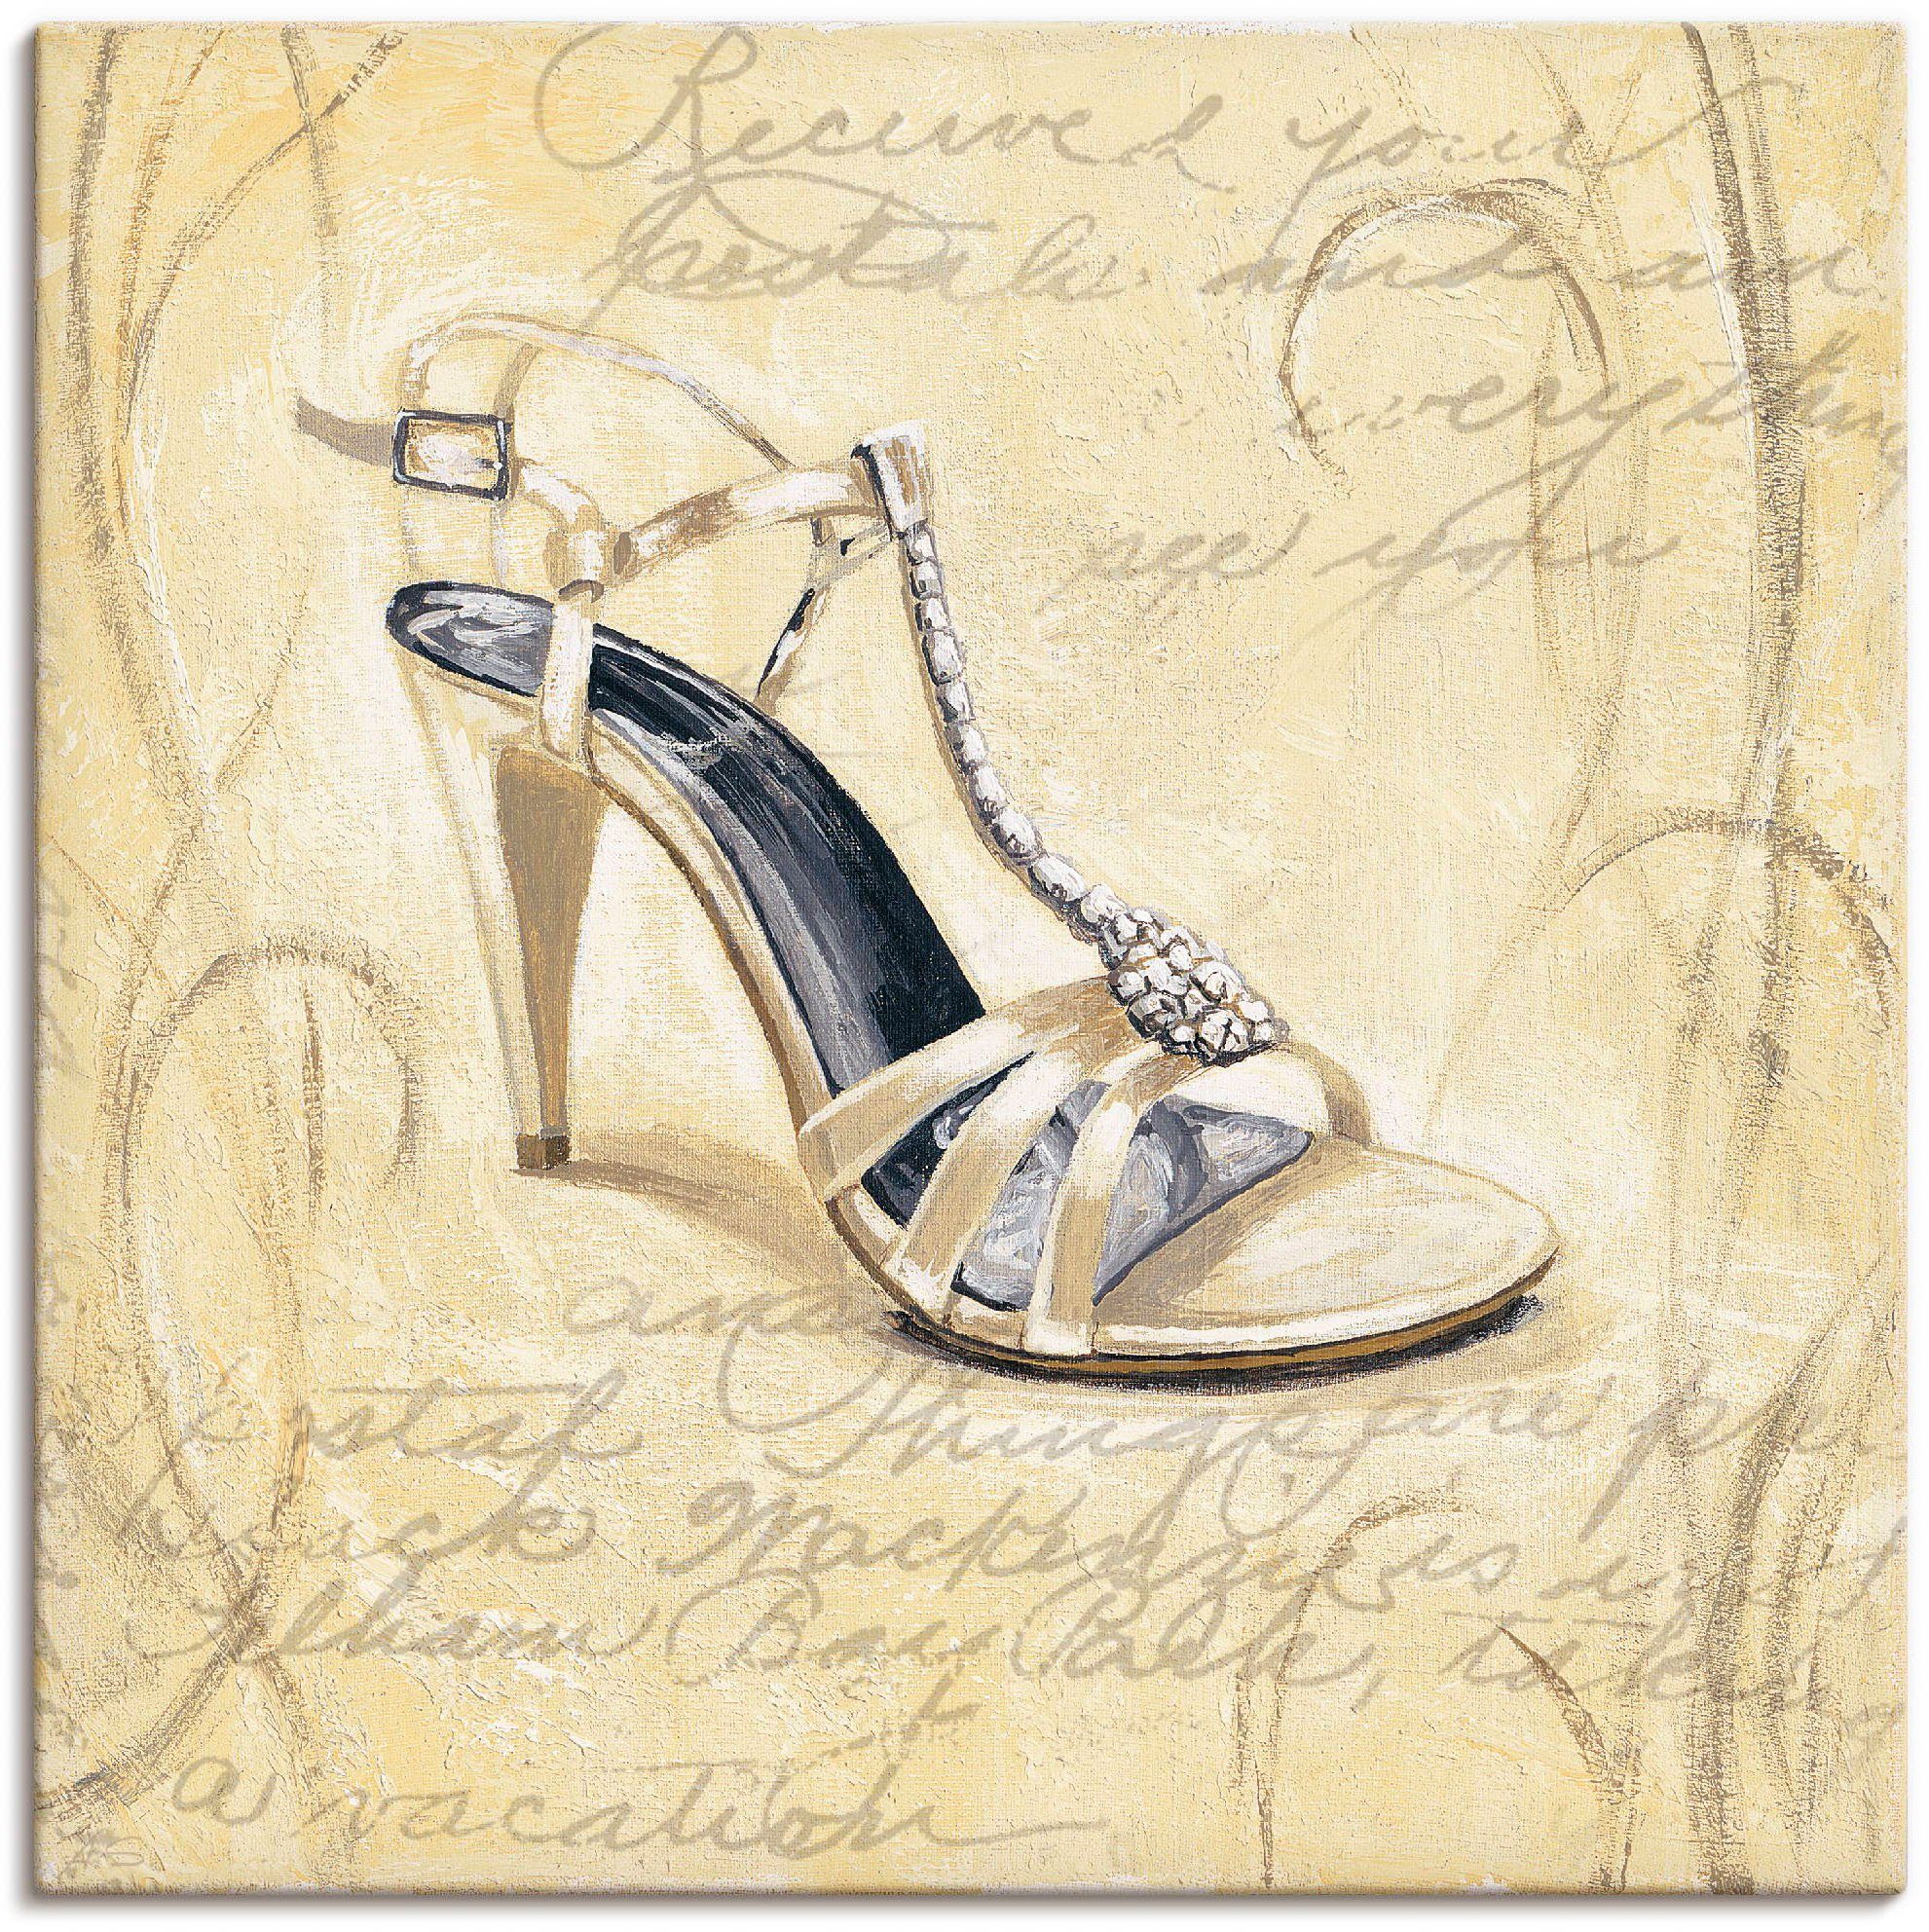 Artland Artprint Stiletto's I - schoenen in vele afmetingen & productsoorten - artprint van aluminium / artprint voor buiten, artprint op linnen, poster, muursticker / wandfolie oo